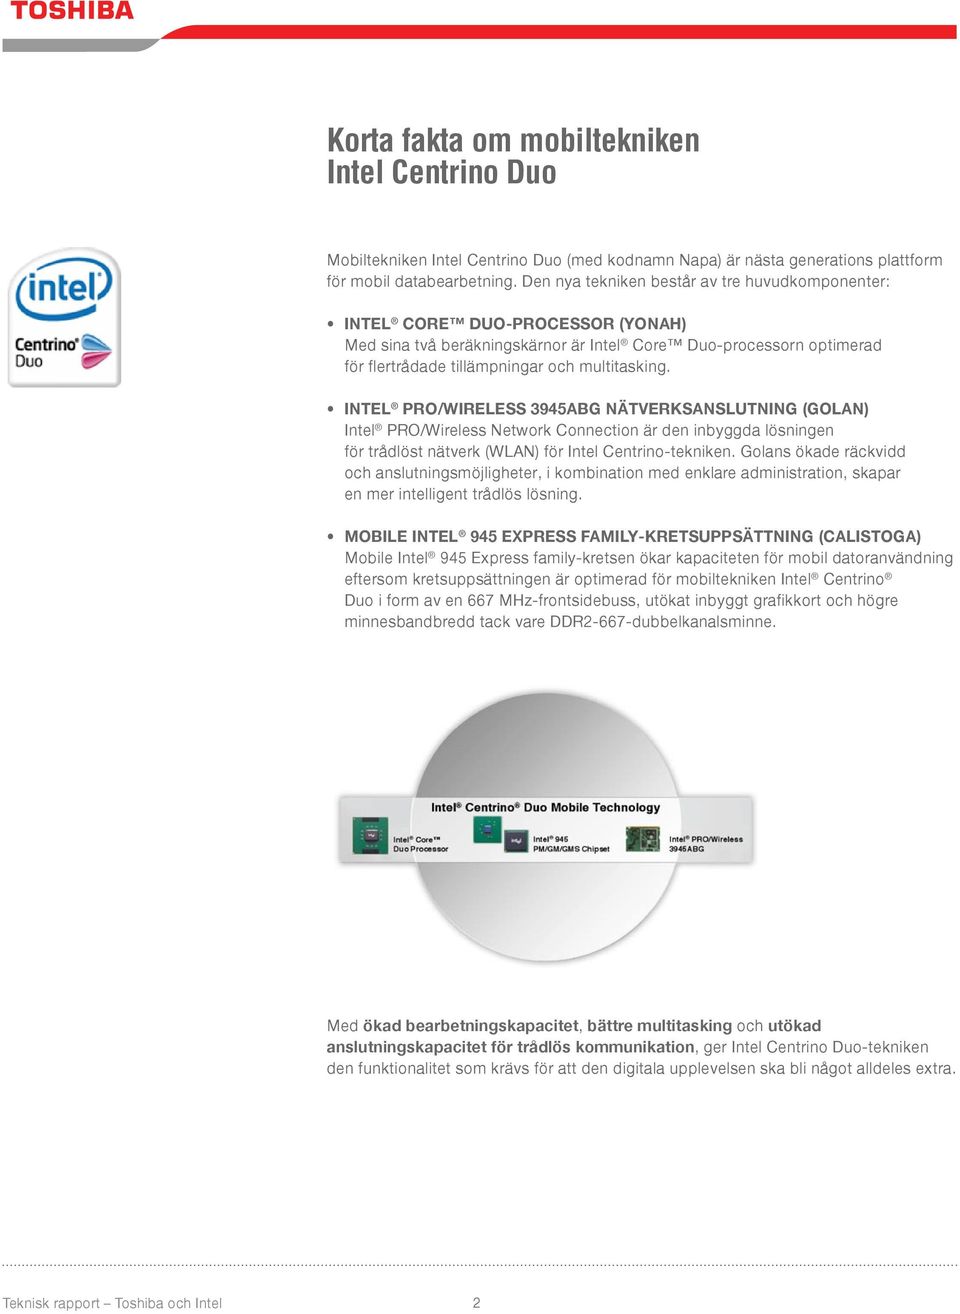 INTEL PRO/WIRELESS 3945ABG NÄTVERKSANSLUTNING (GOLAN) Intel PRO/Wireless Network Connection är den inbyggda lösningen för trådlöst nätverk (WLAN) för Intel Centrino-tekniken.